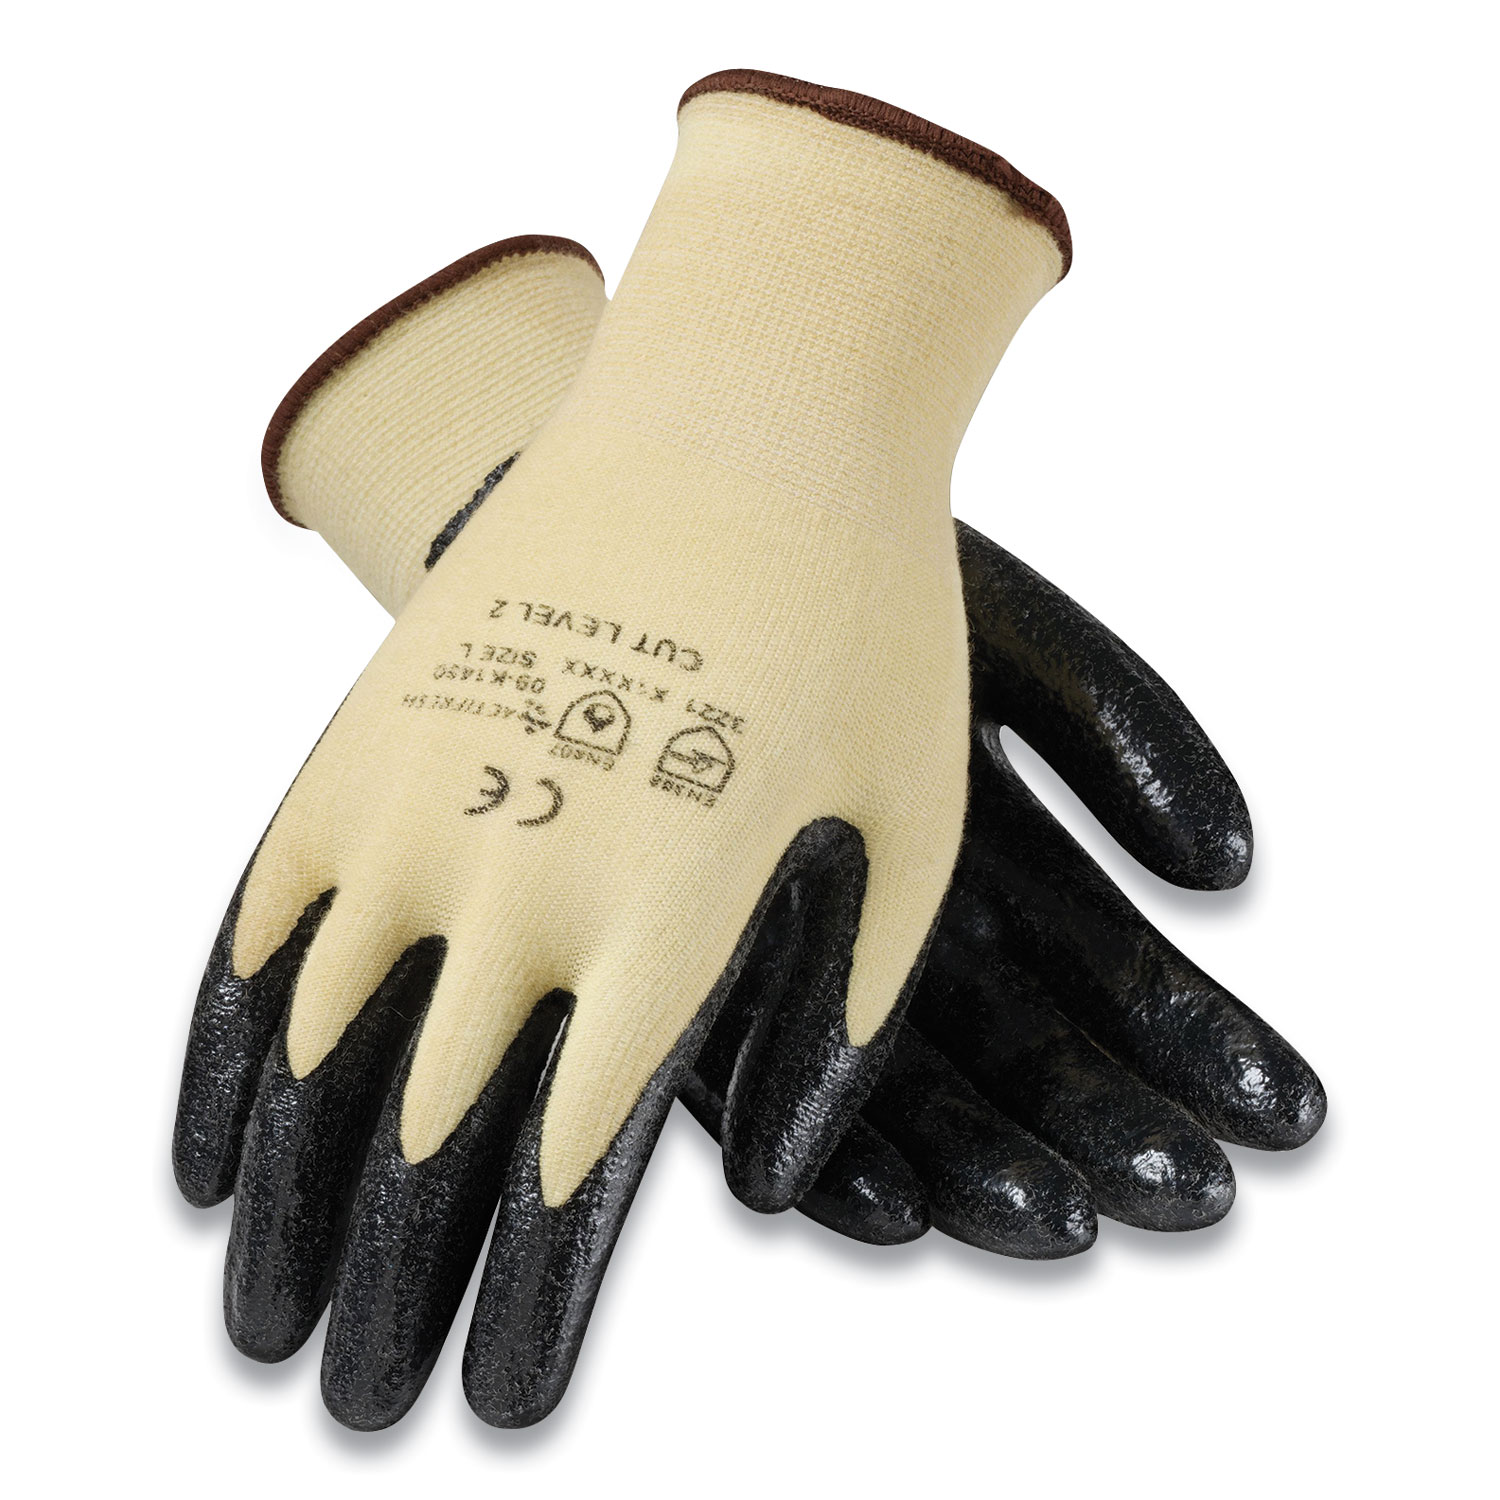 G-Tek® KEV Seamless Knit Kevlar Gloves, Large, Yellow/Black, 12 Pairs